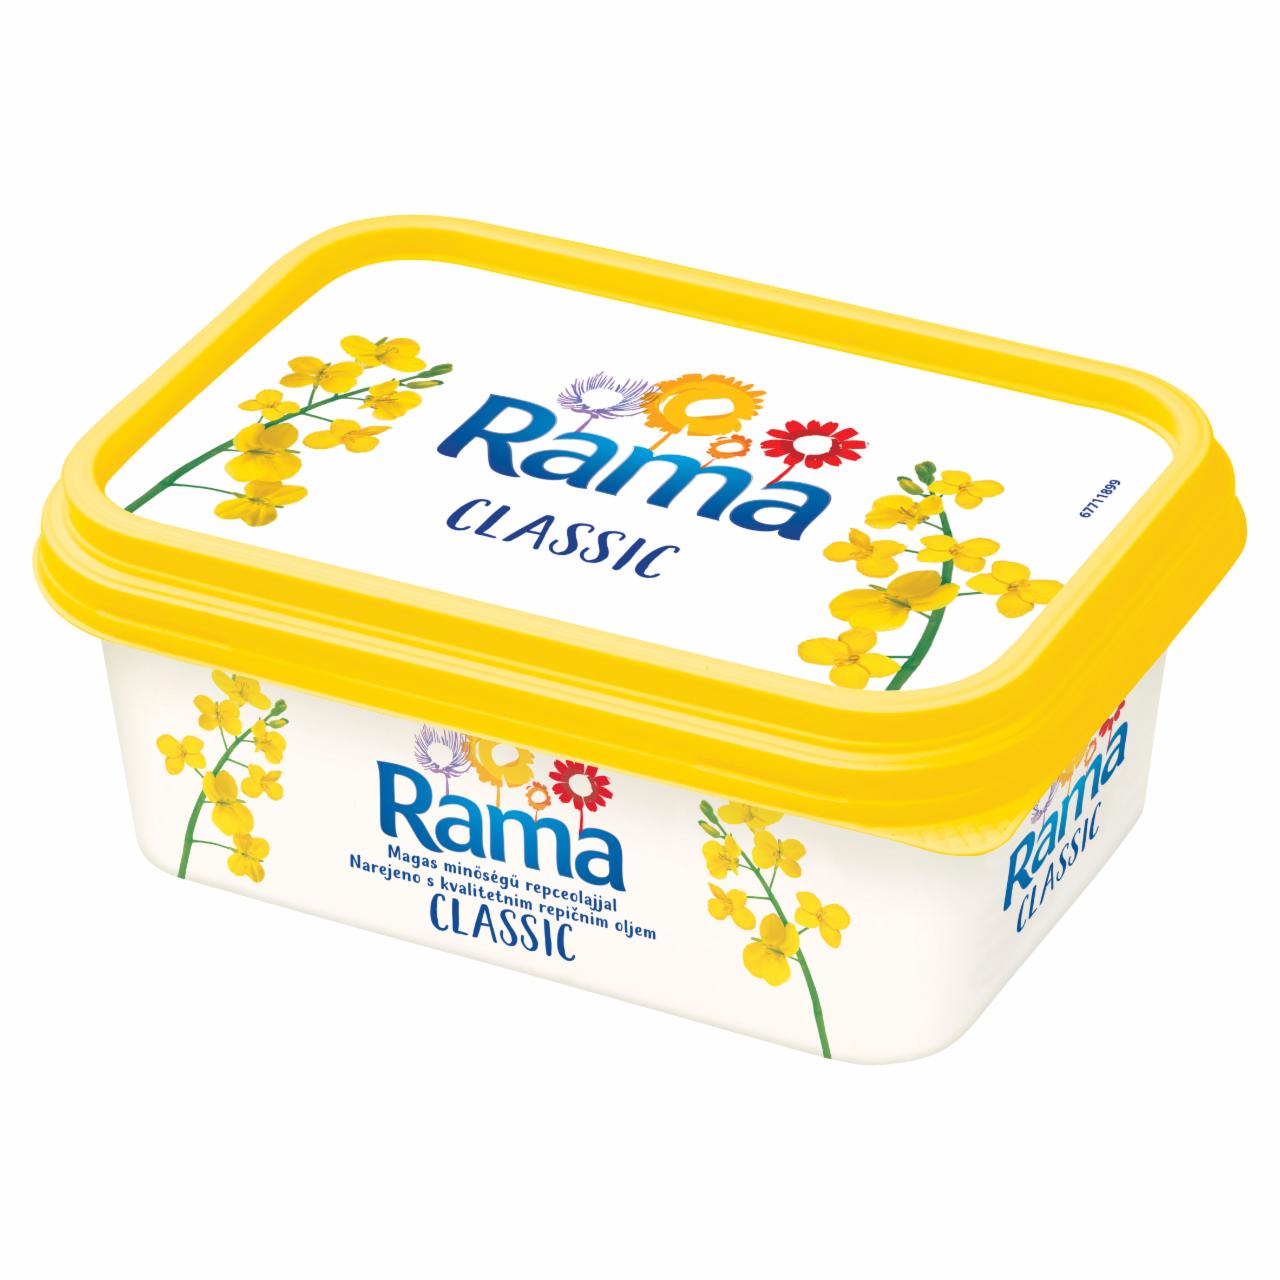 Képek - Rama Classic csökkentett zsírtartalmú margarin 250 g